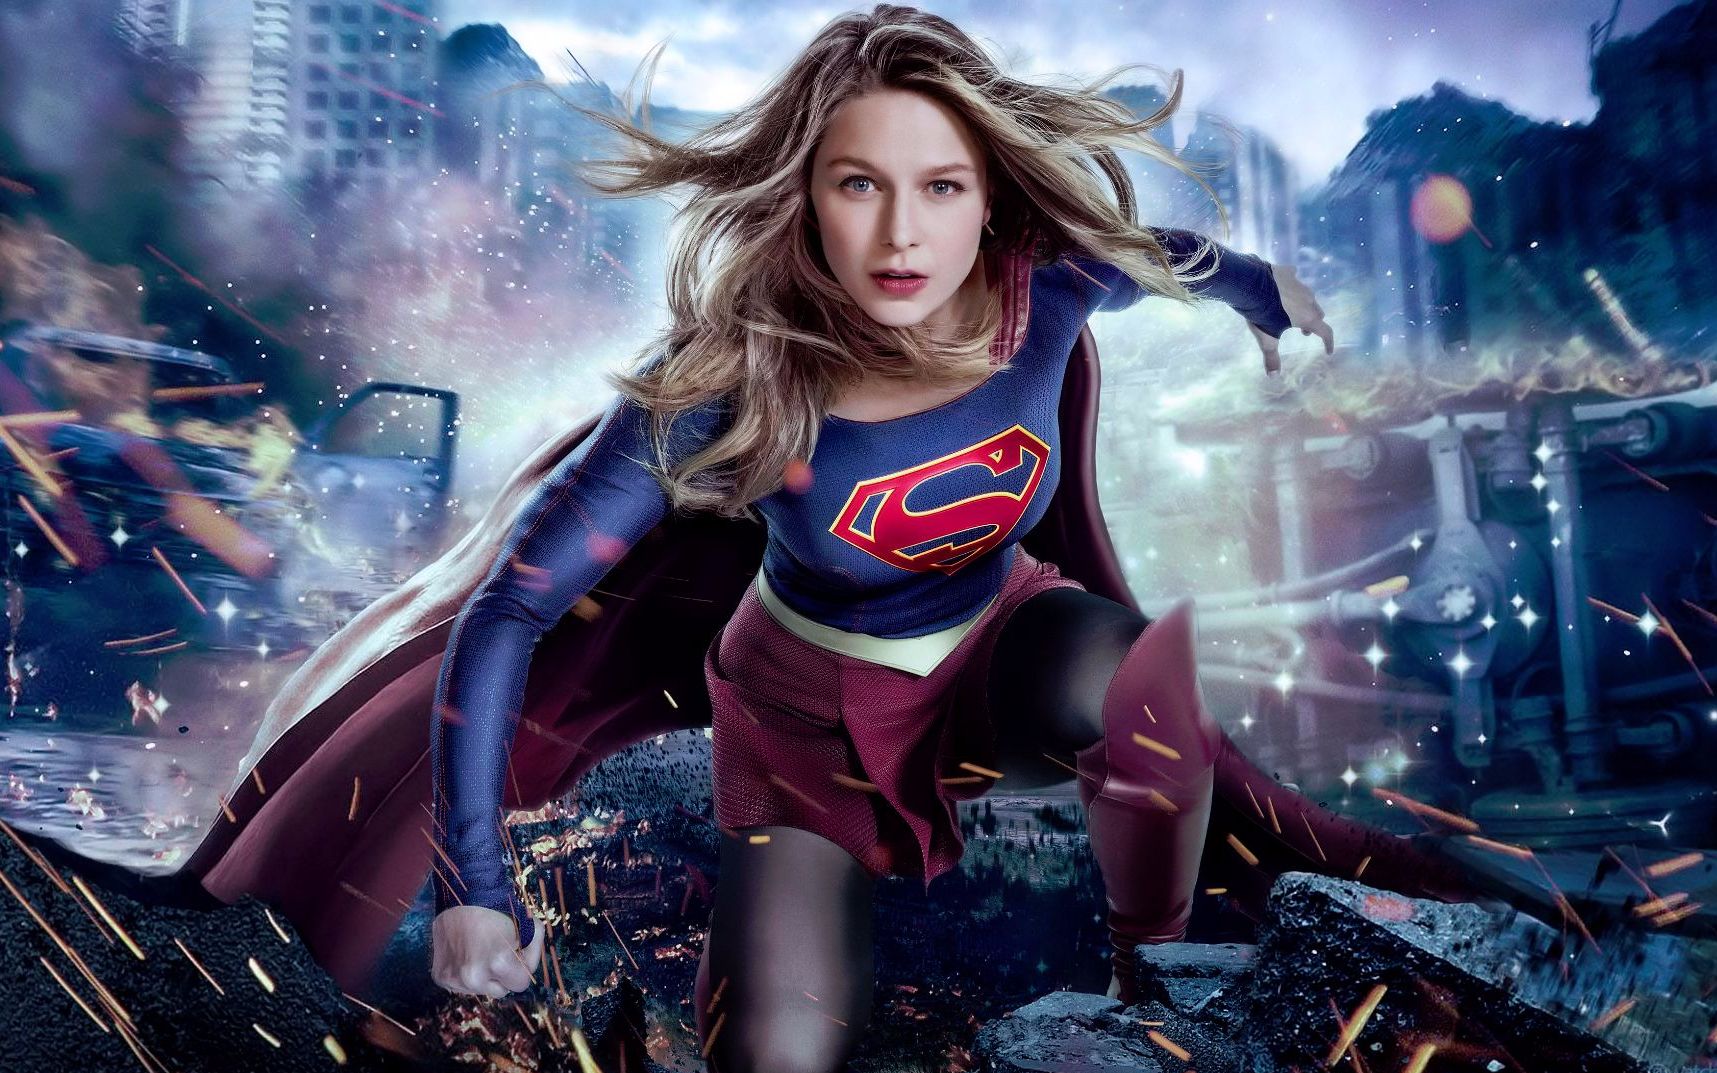 【超女】超人表姐supergirl首次登场拯救世界 惊艳四射